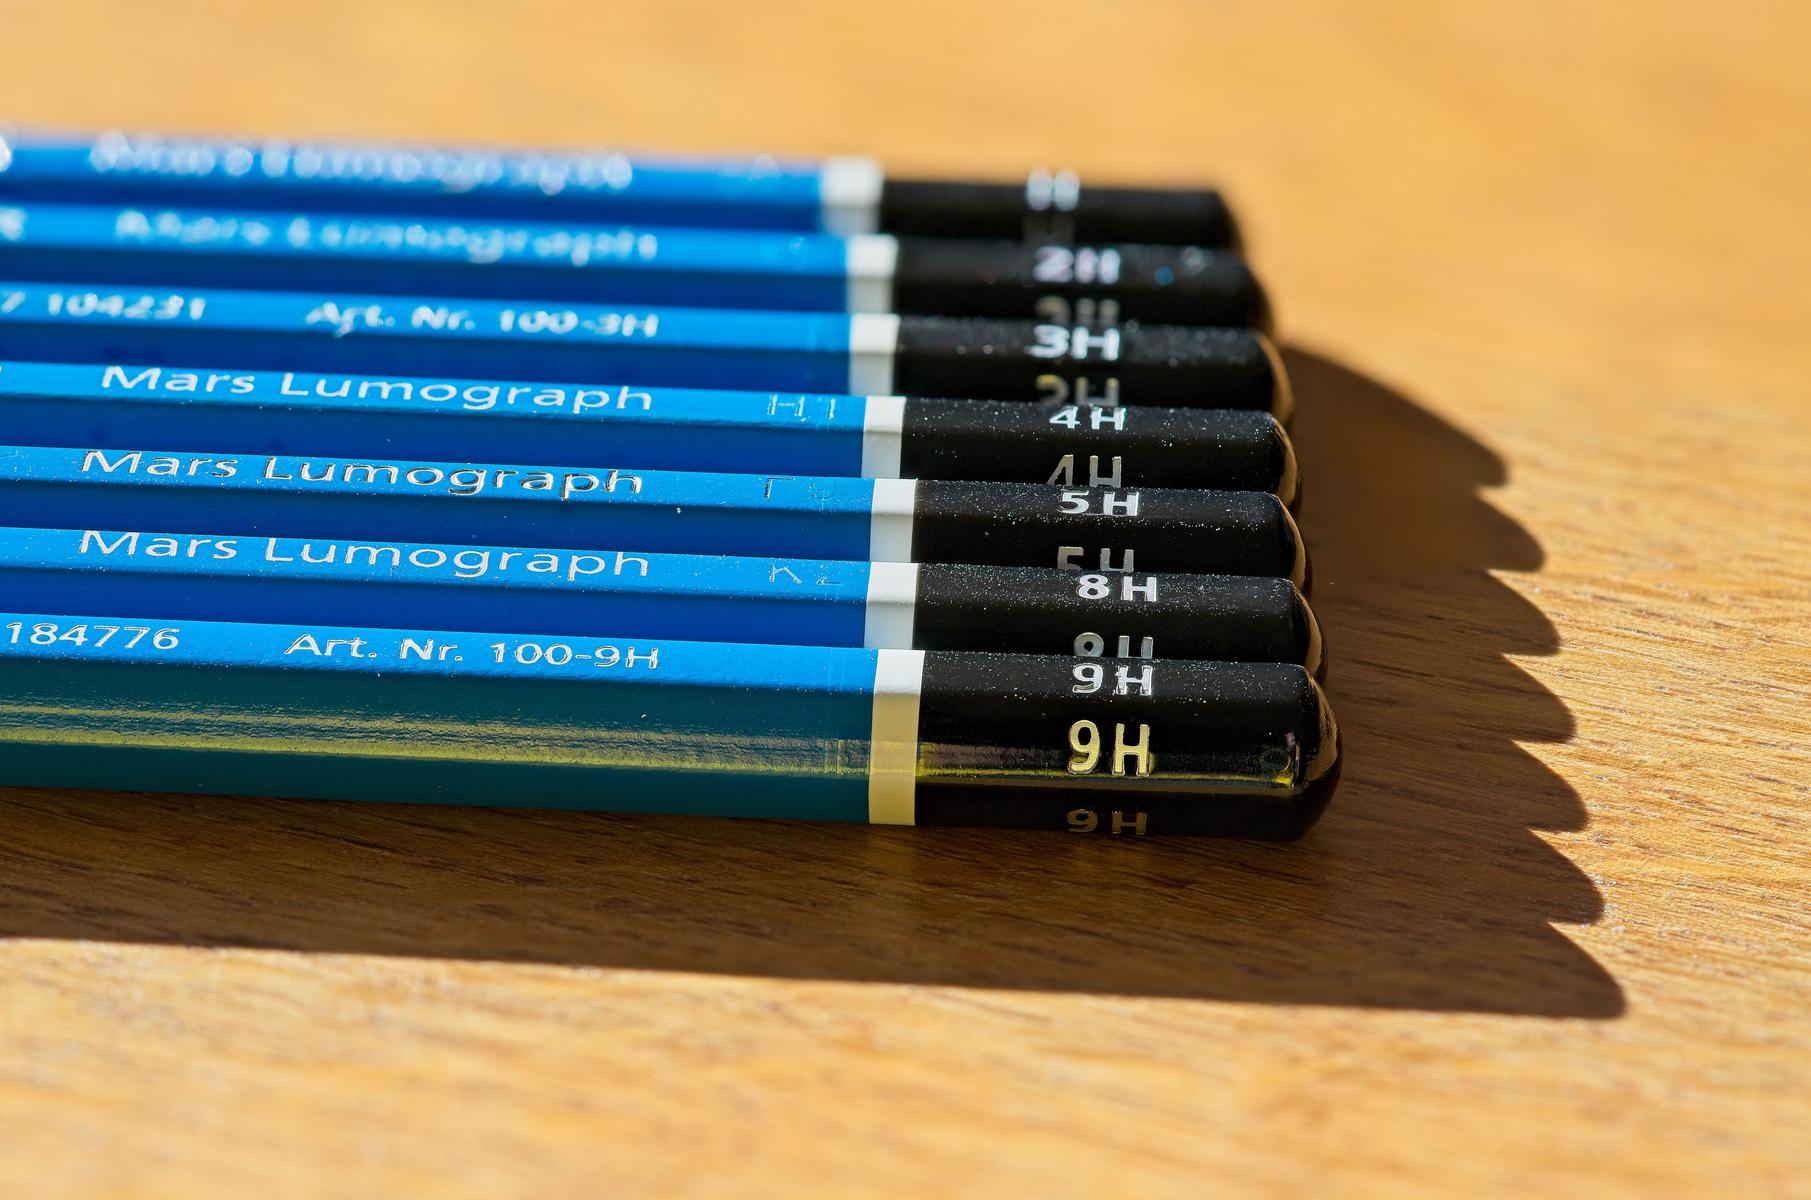 Bleistifte mit einer Bleistifthärte von 1H bis 9H